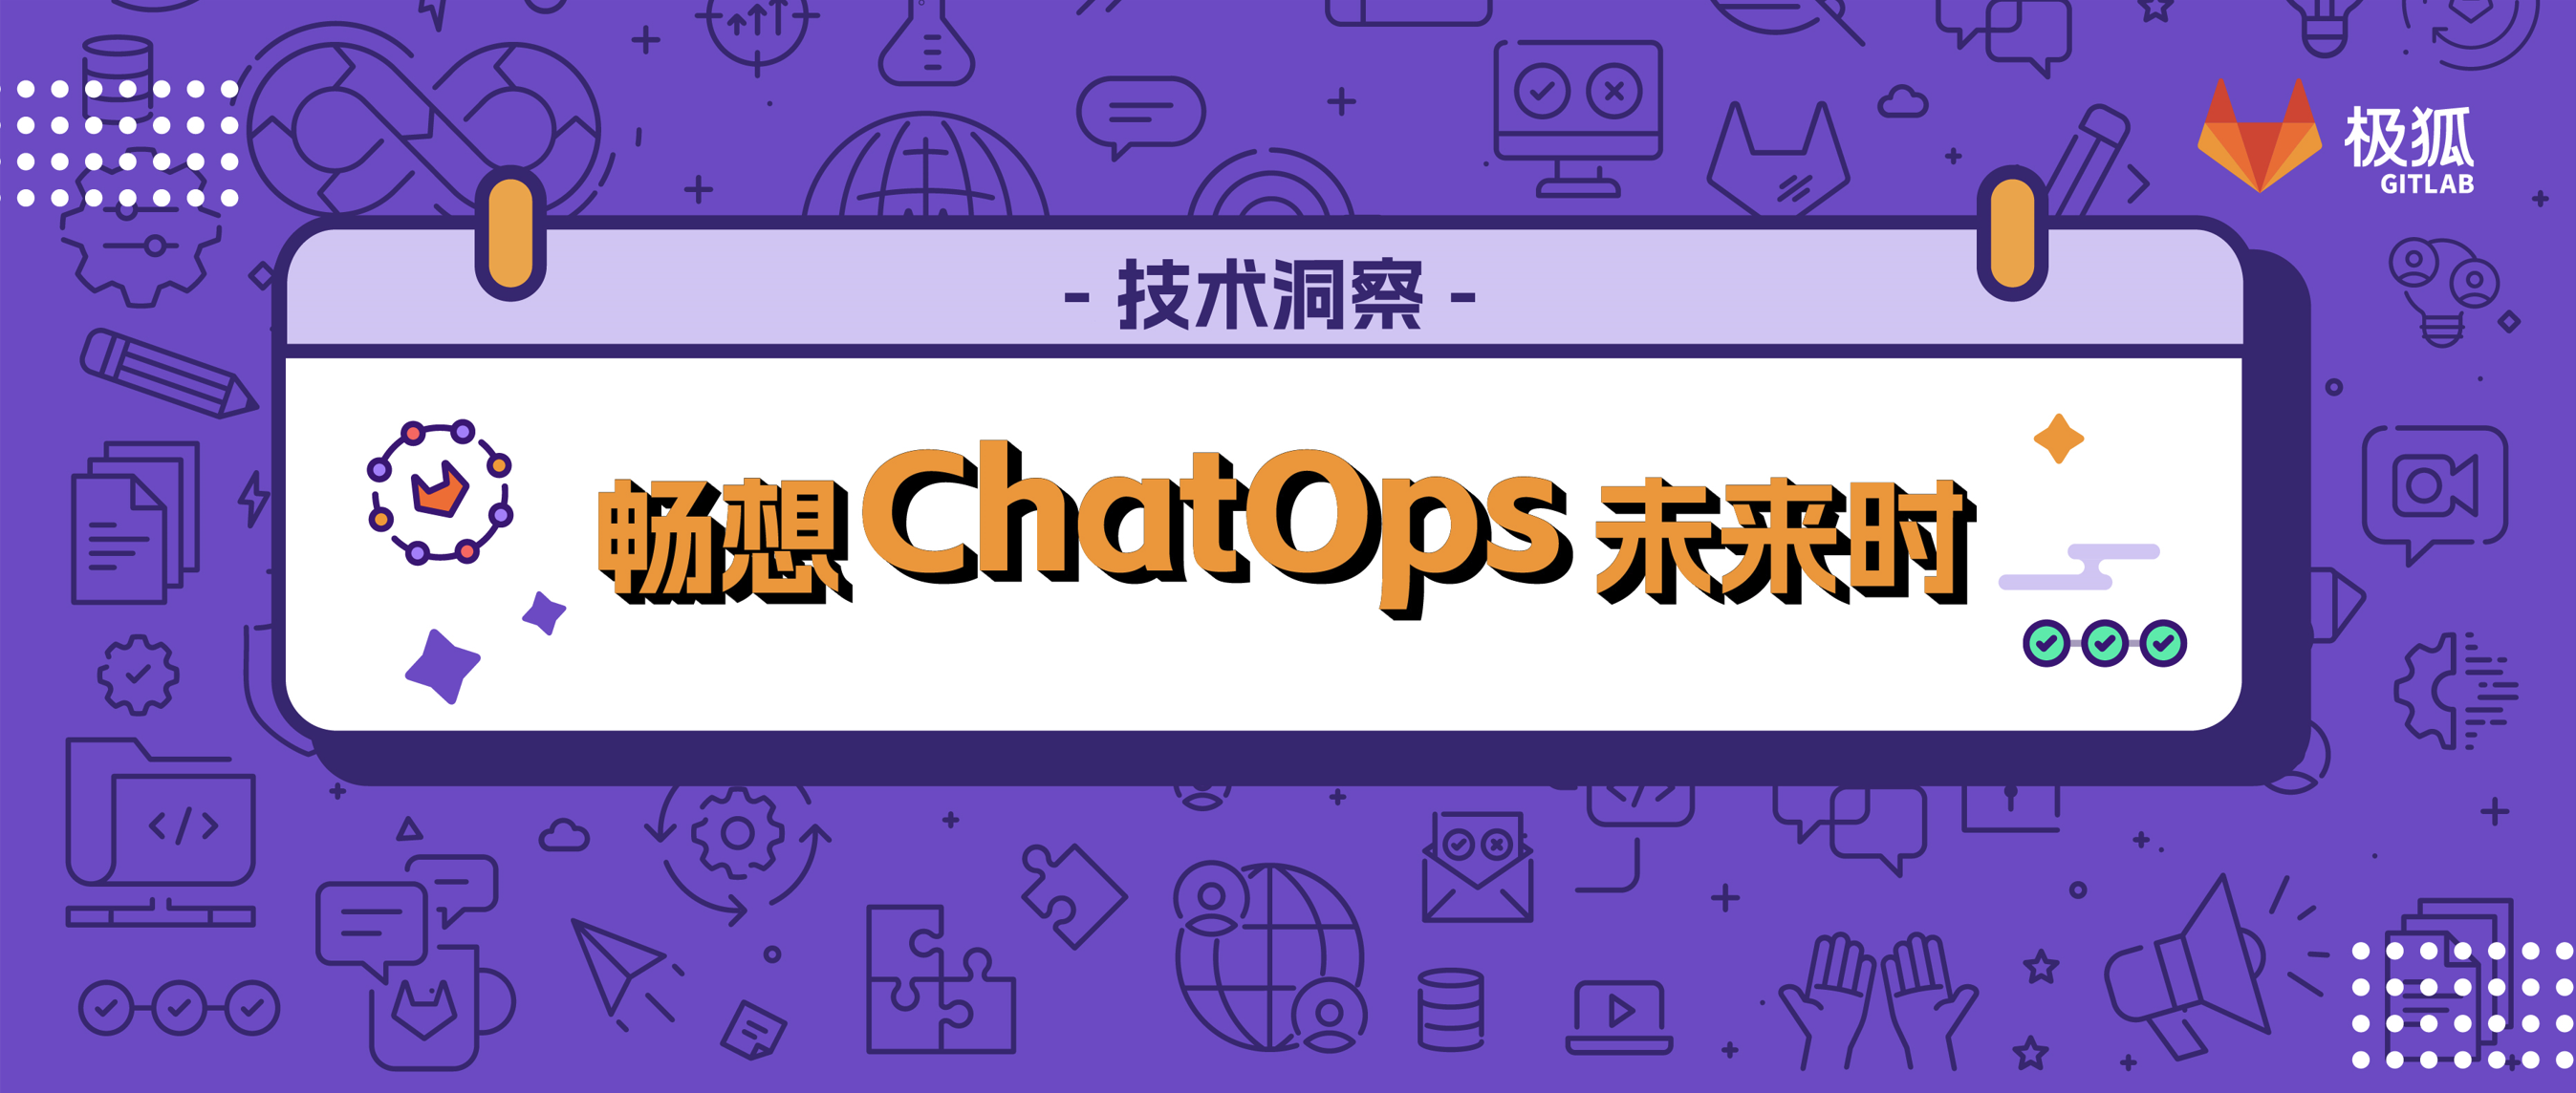 脑洞｜ChatGPT加持下，ChatOps将如何革新团队协作与运维管理？